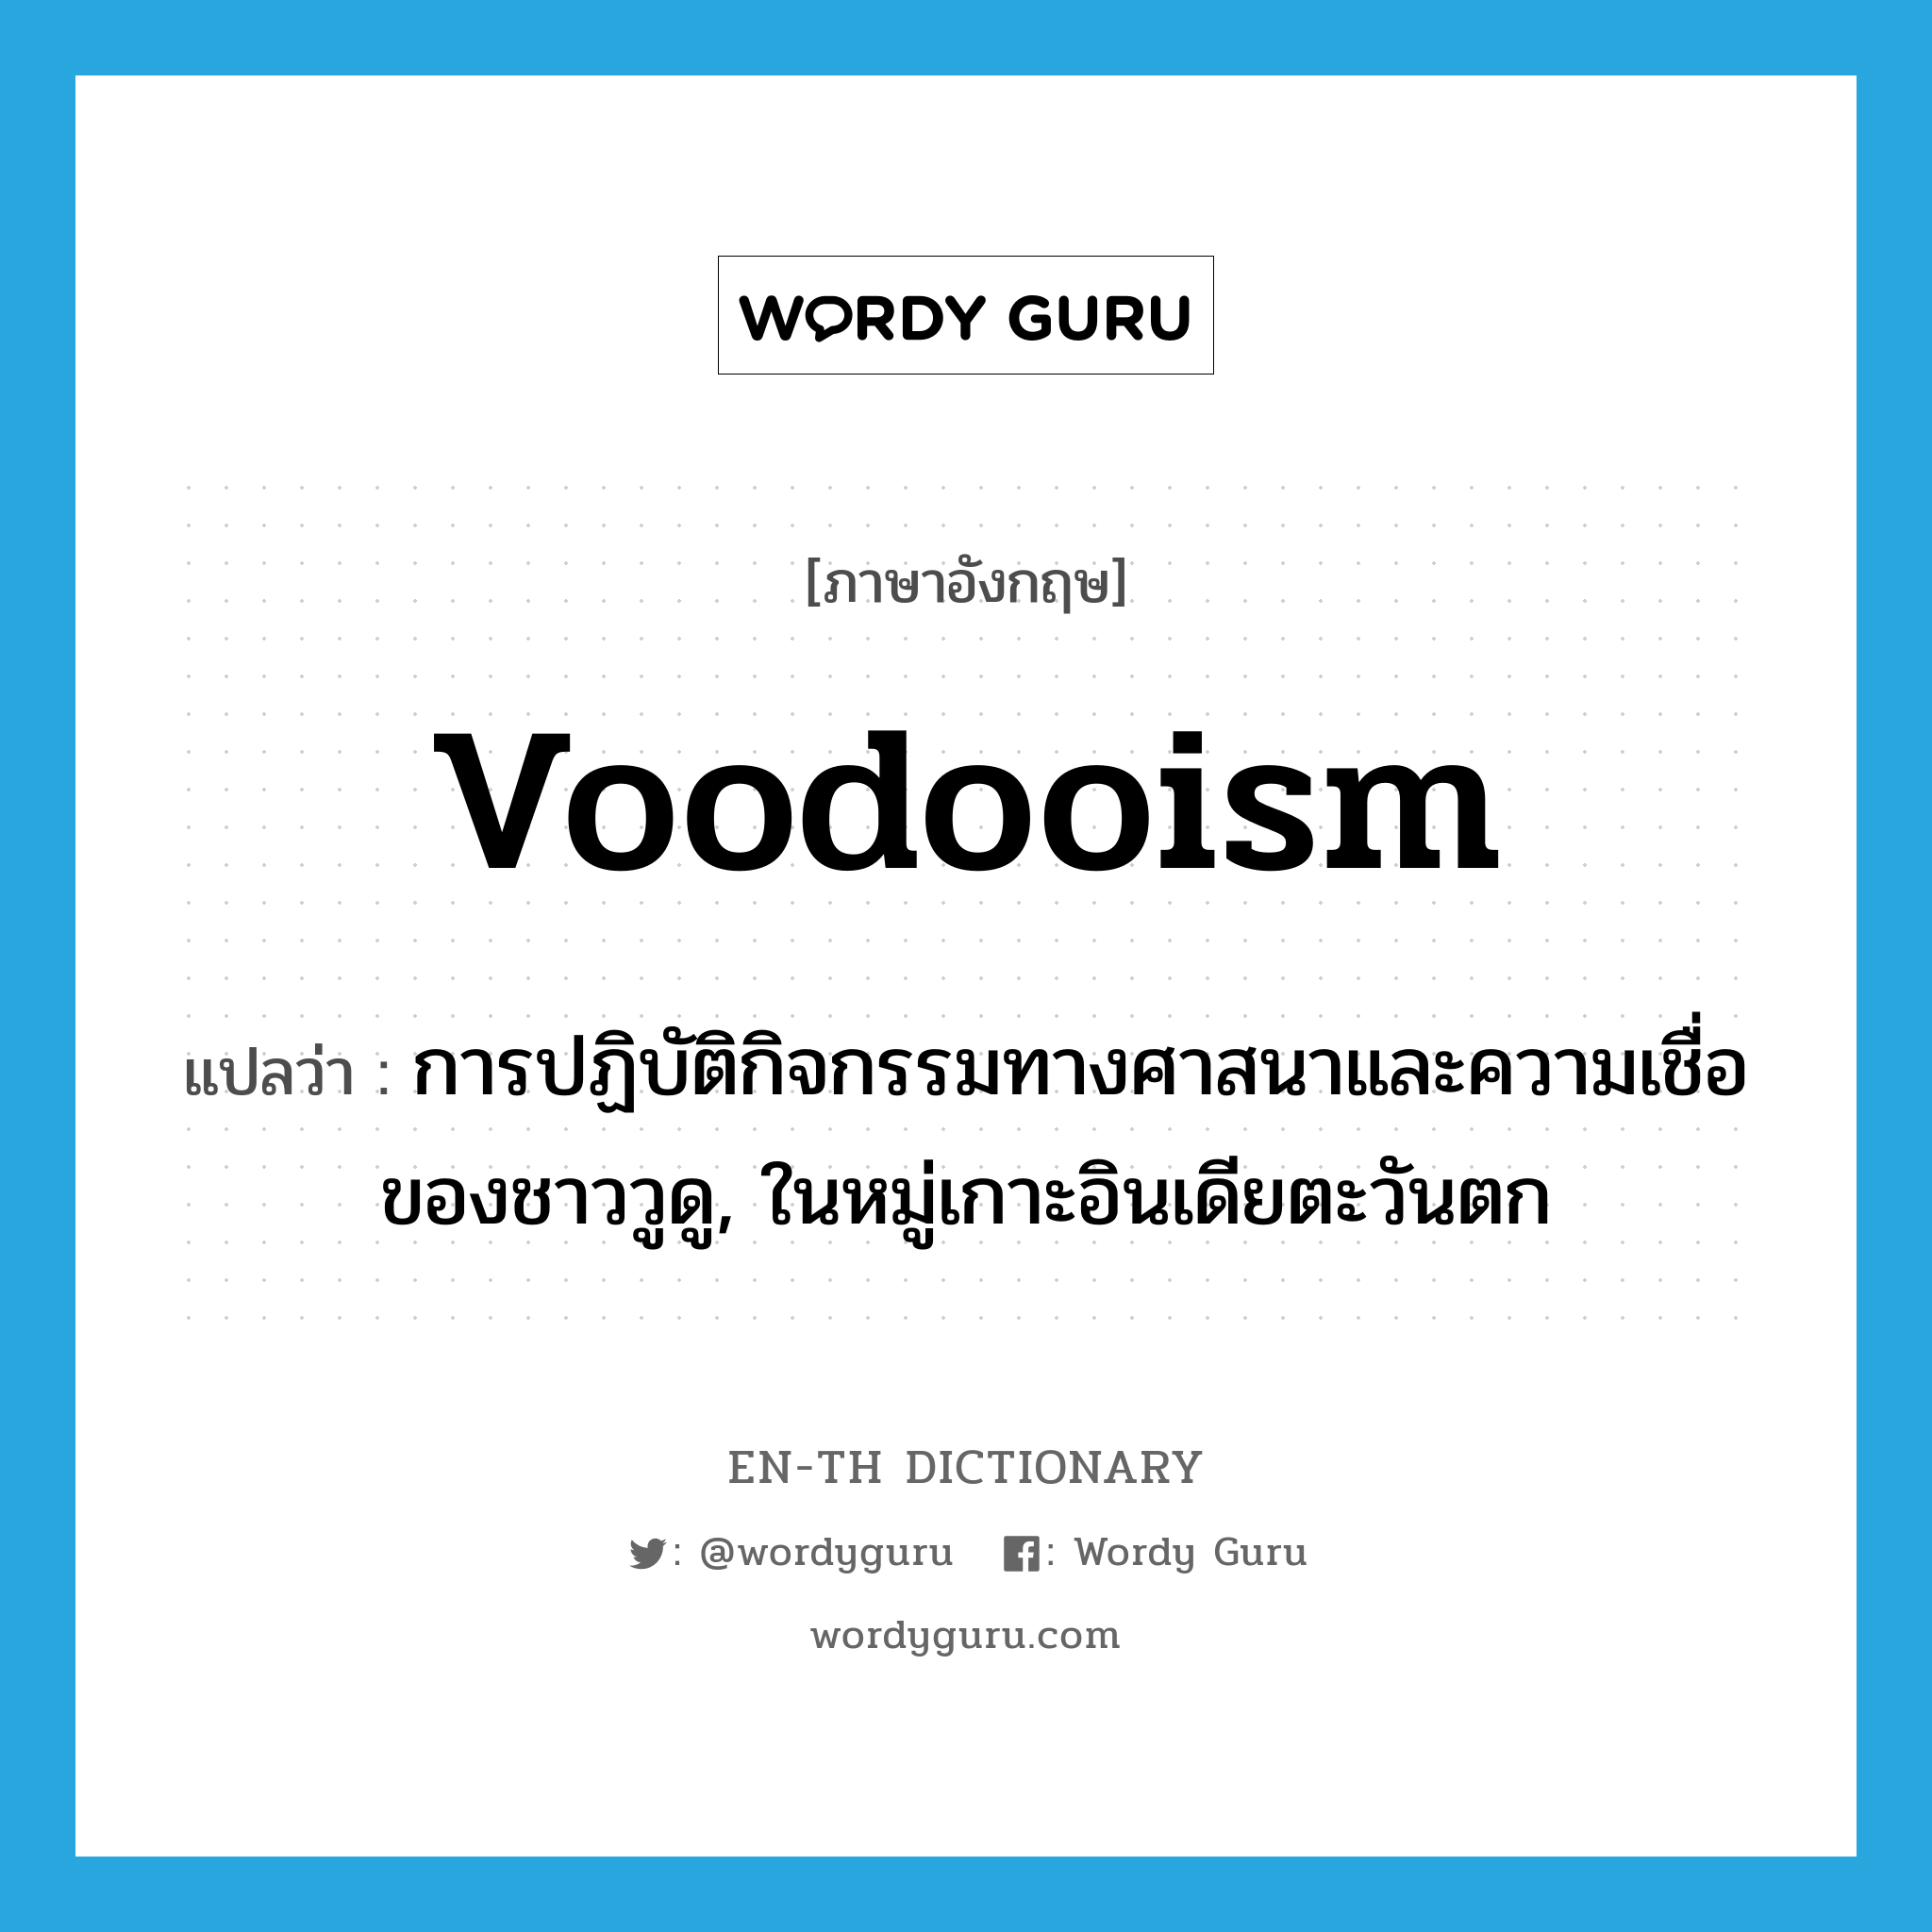 voodooism แปลว่า?, คำศัพท์ภาษาอังกฤษ voodooism แปลว่า การปฏิบัติกิจกรรมทางศาสนาและความเชื่อของชาววูดู, ในหมู่เกาะอินเดียตะวันตก ประเภท N หมวด N